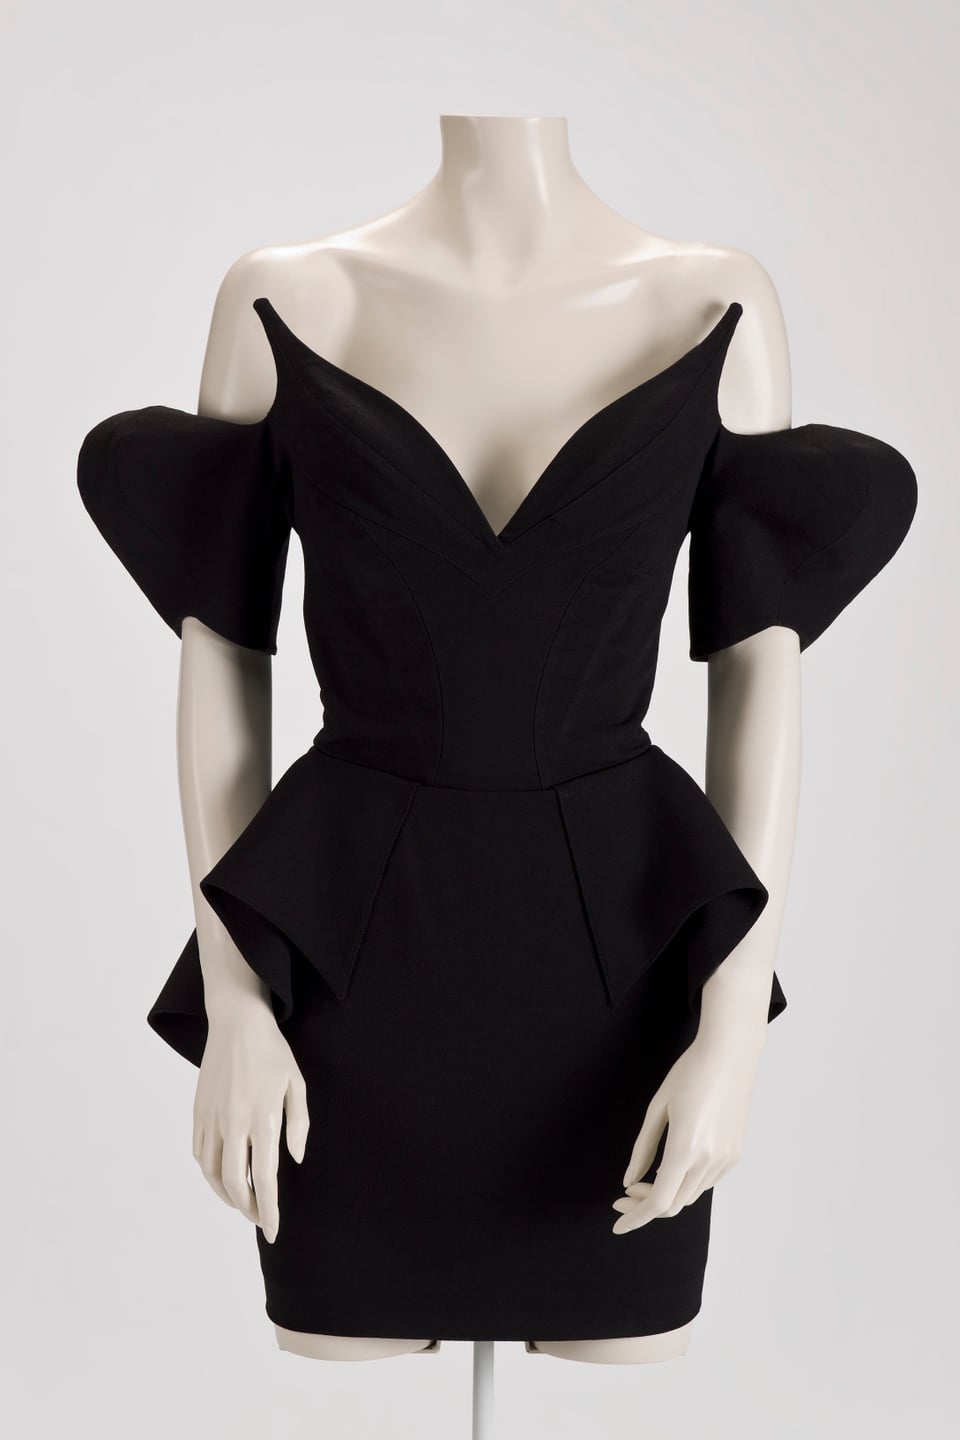 Ein schwarzes Kleid mit extravaganten Ärmeln ist an einer Schaufenster-Puppe ausgestellt.